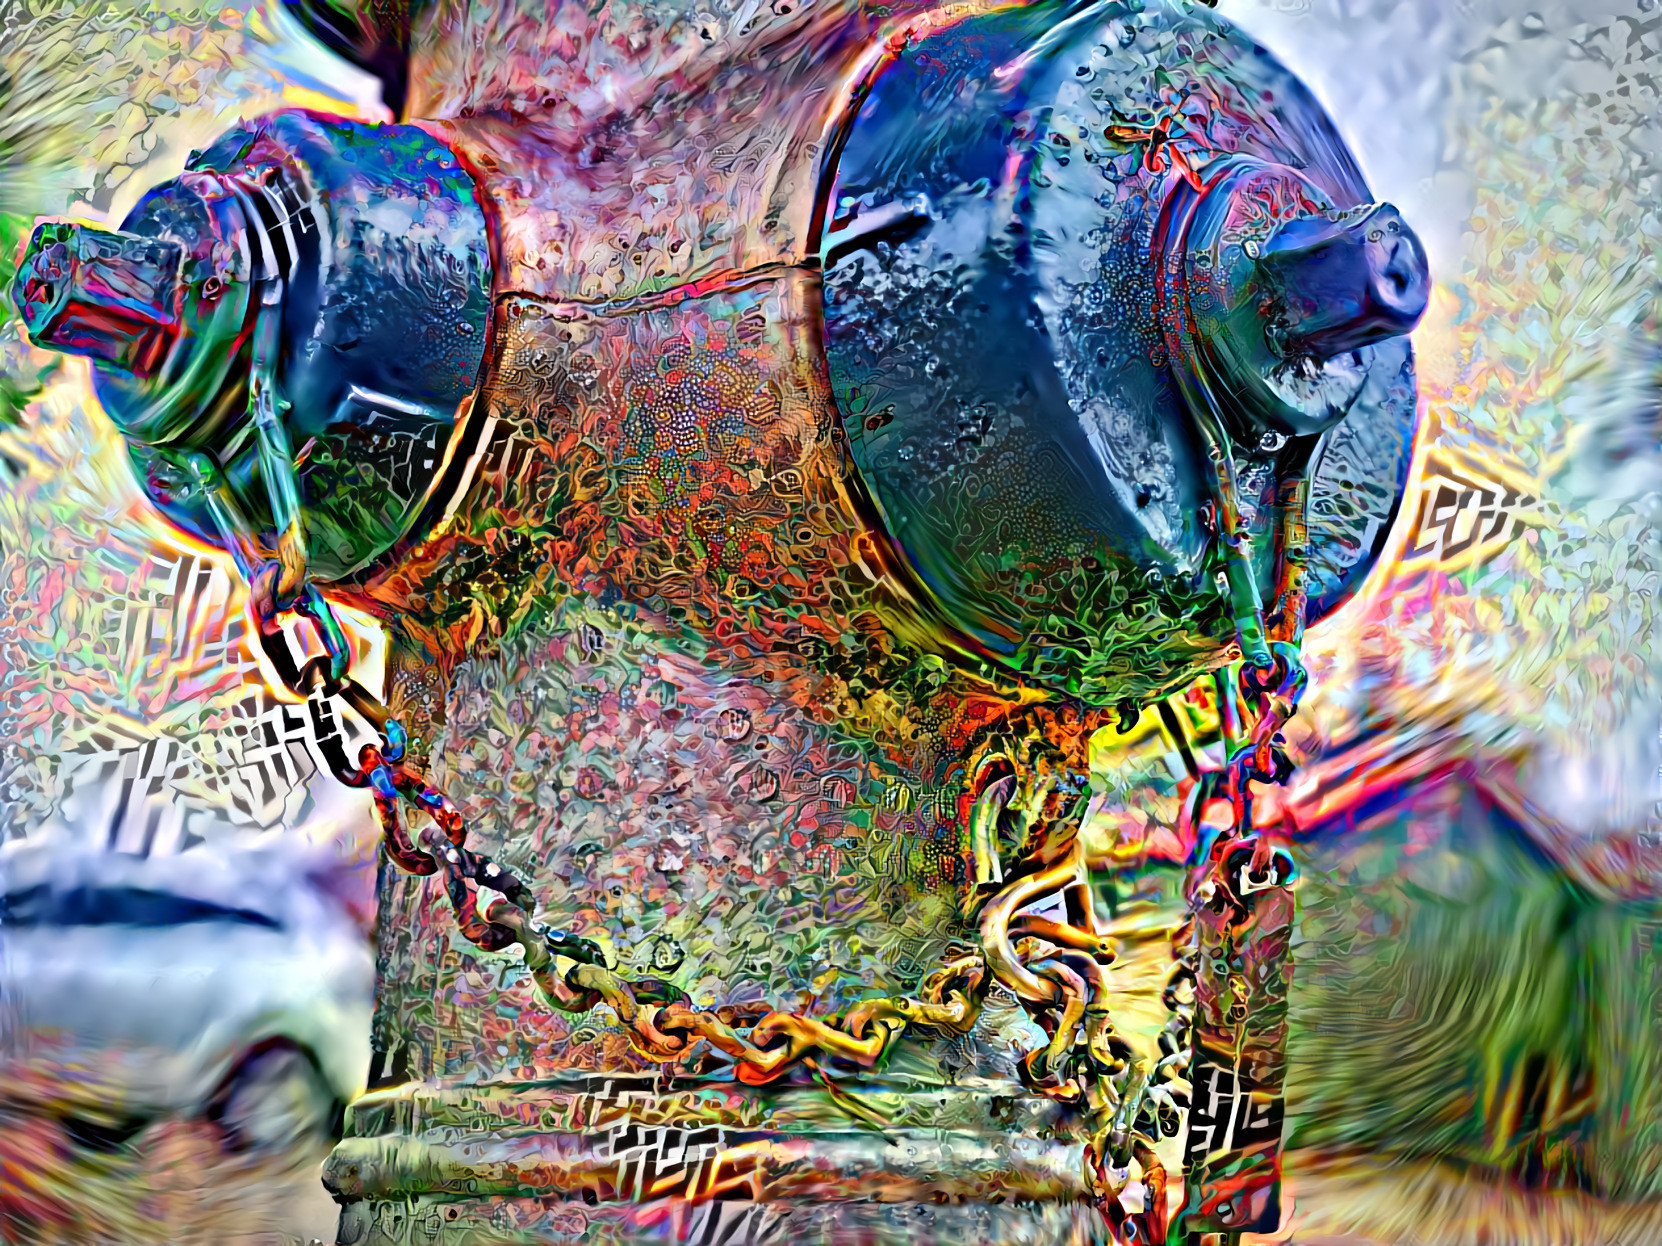 Supahyrdaulic Hydrant